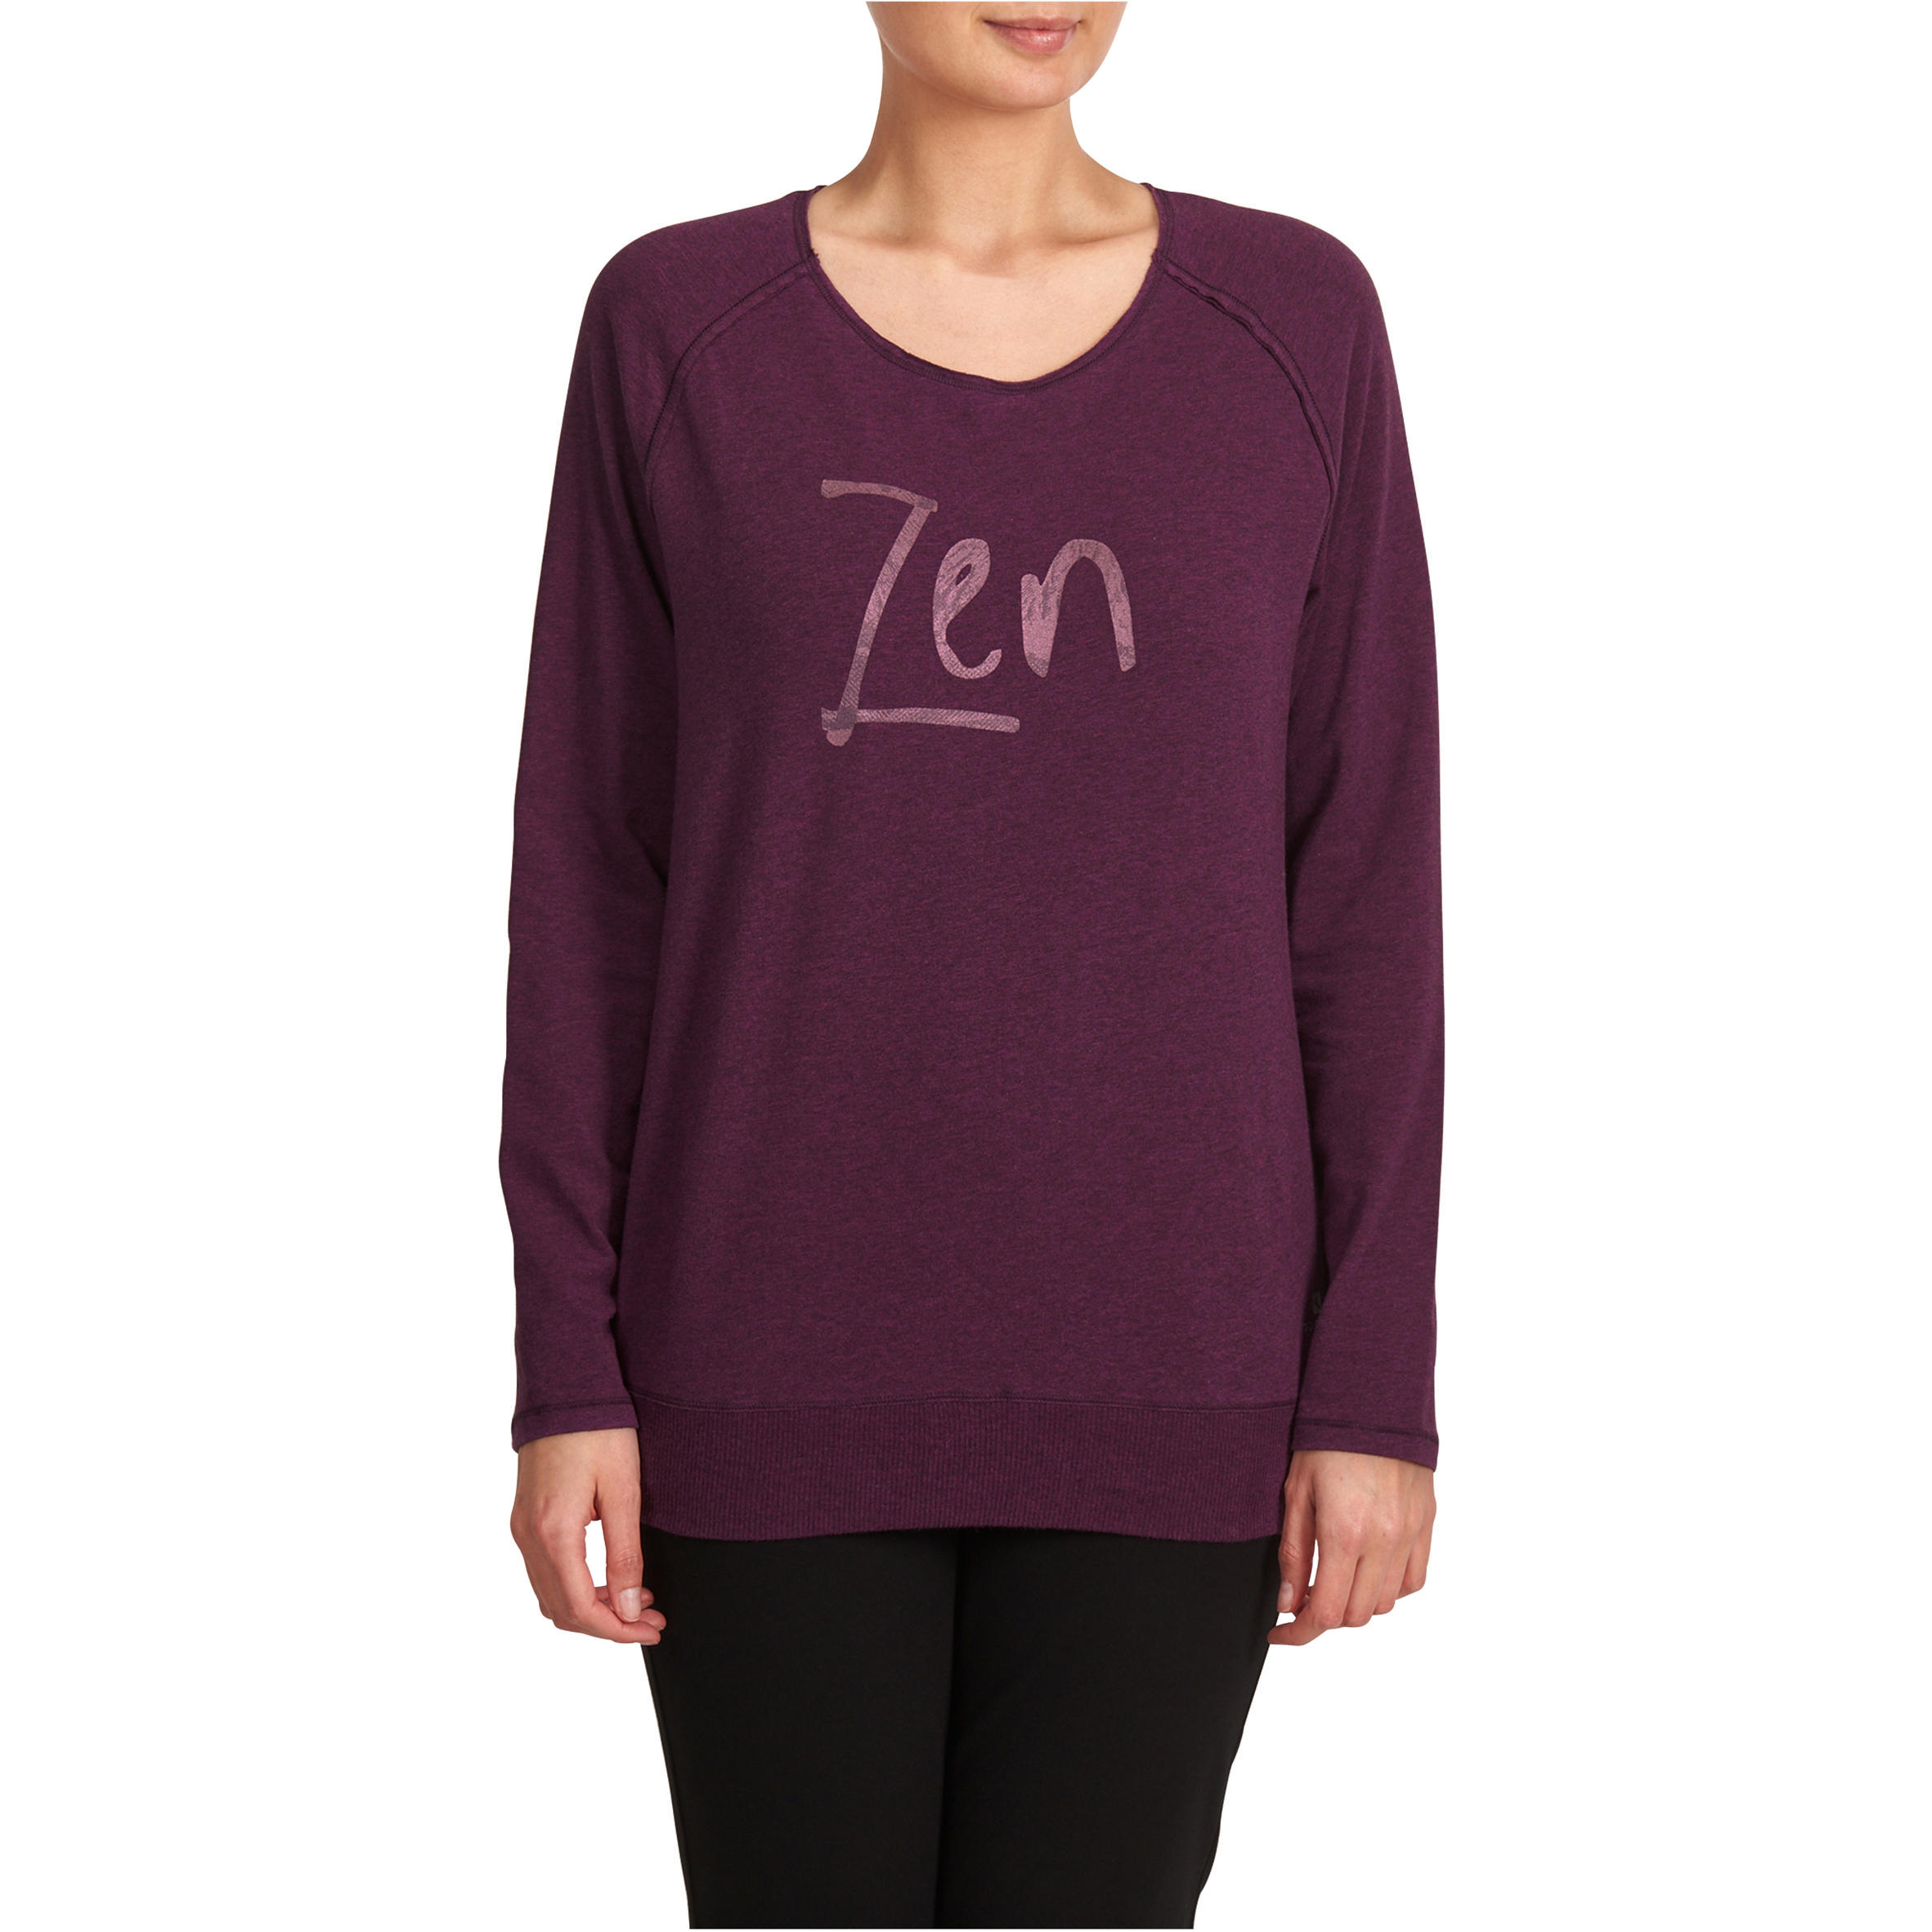 Women's Organic Cotton Long-Sleeved Yoga T-Shirt - Mottled Burgundy 1/12